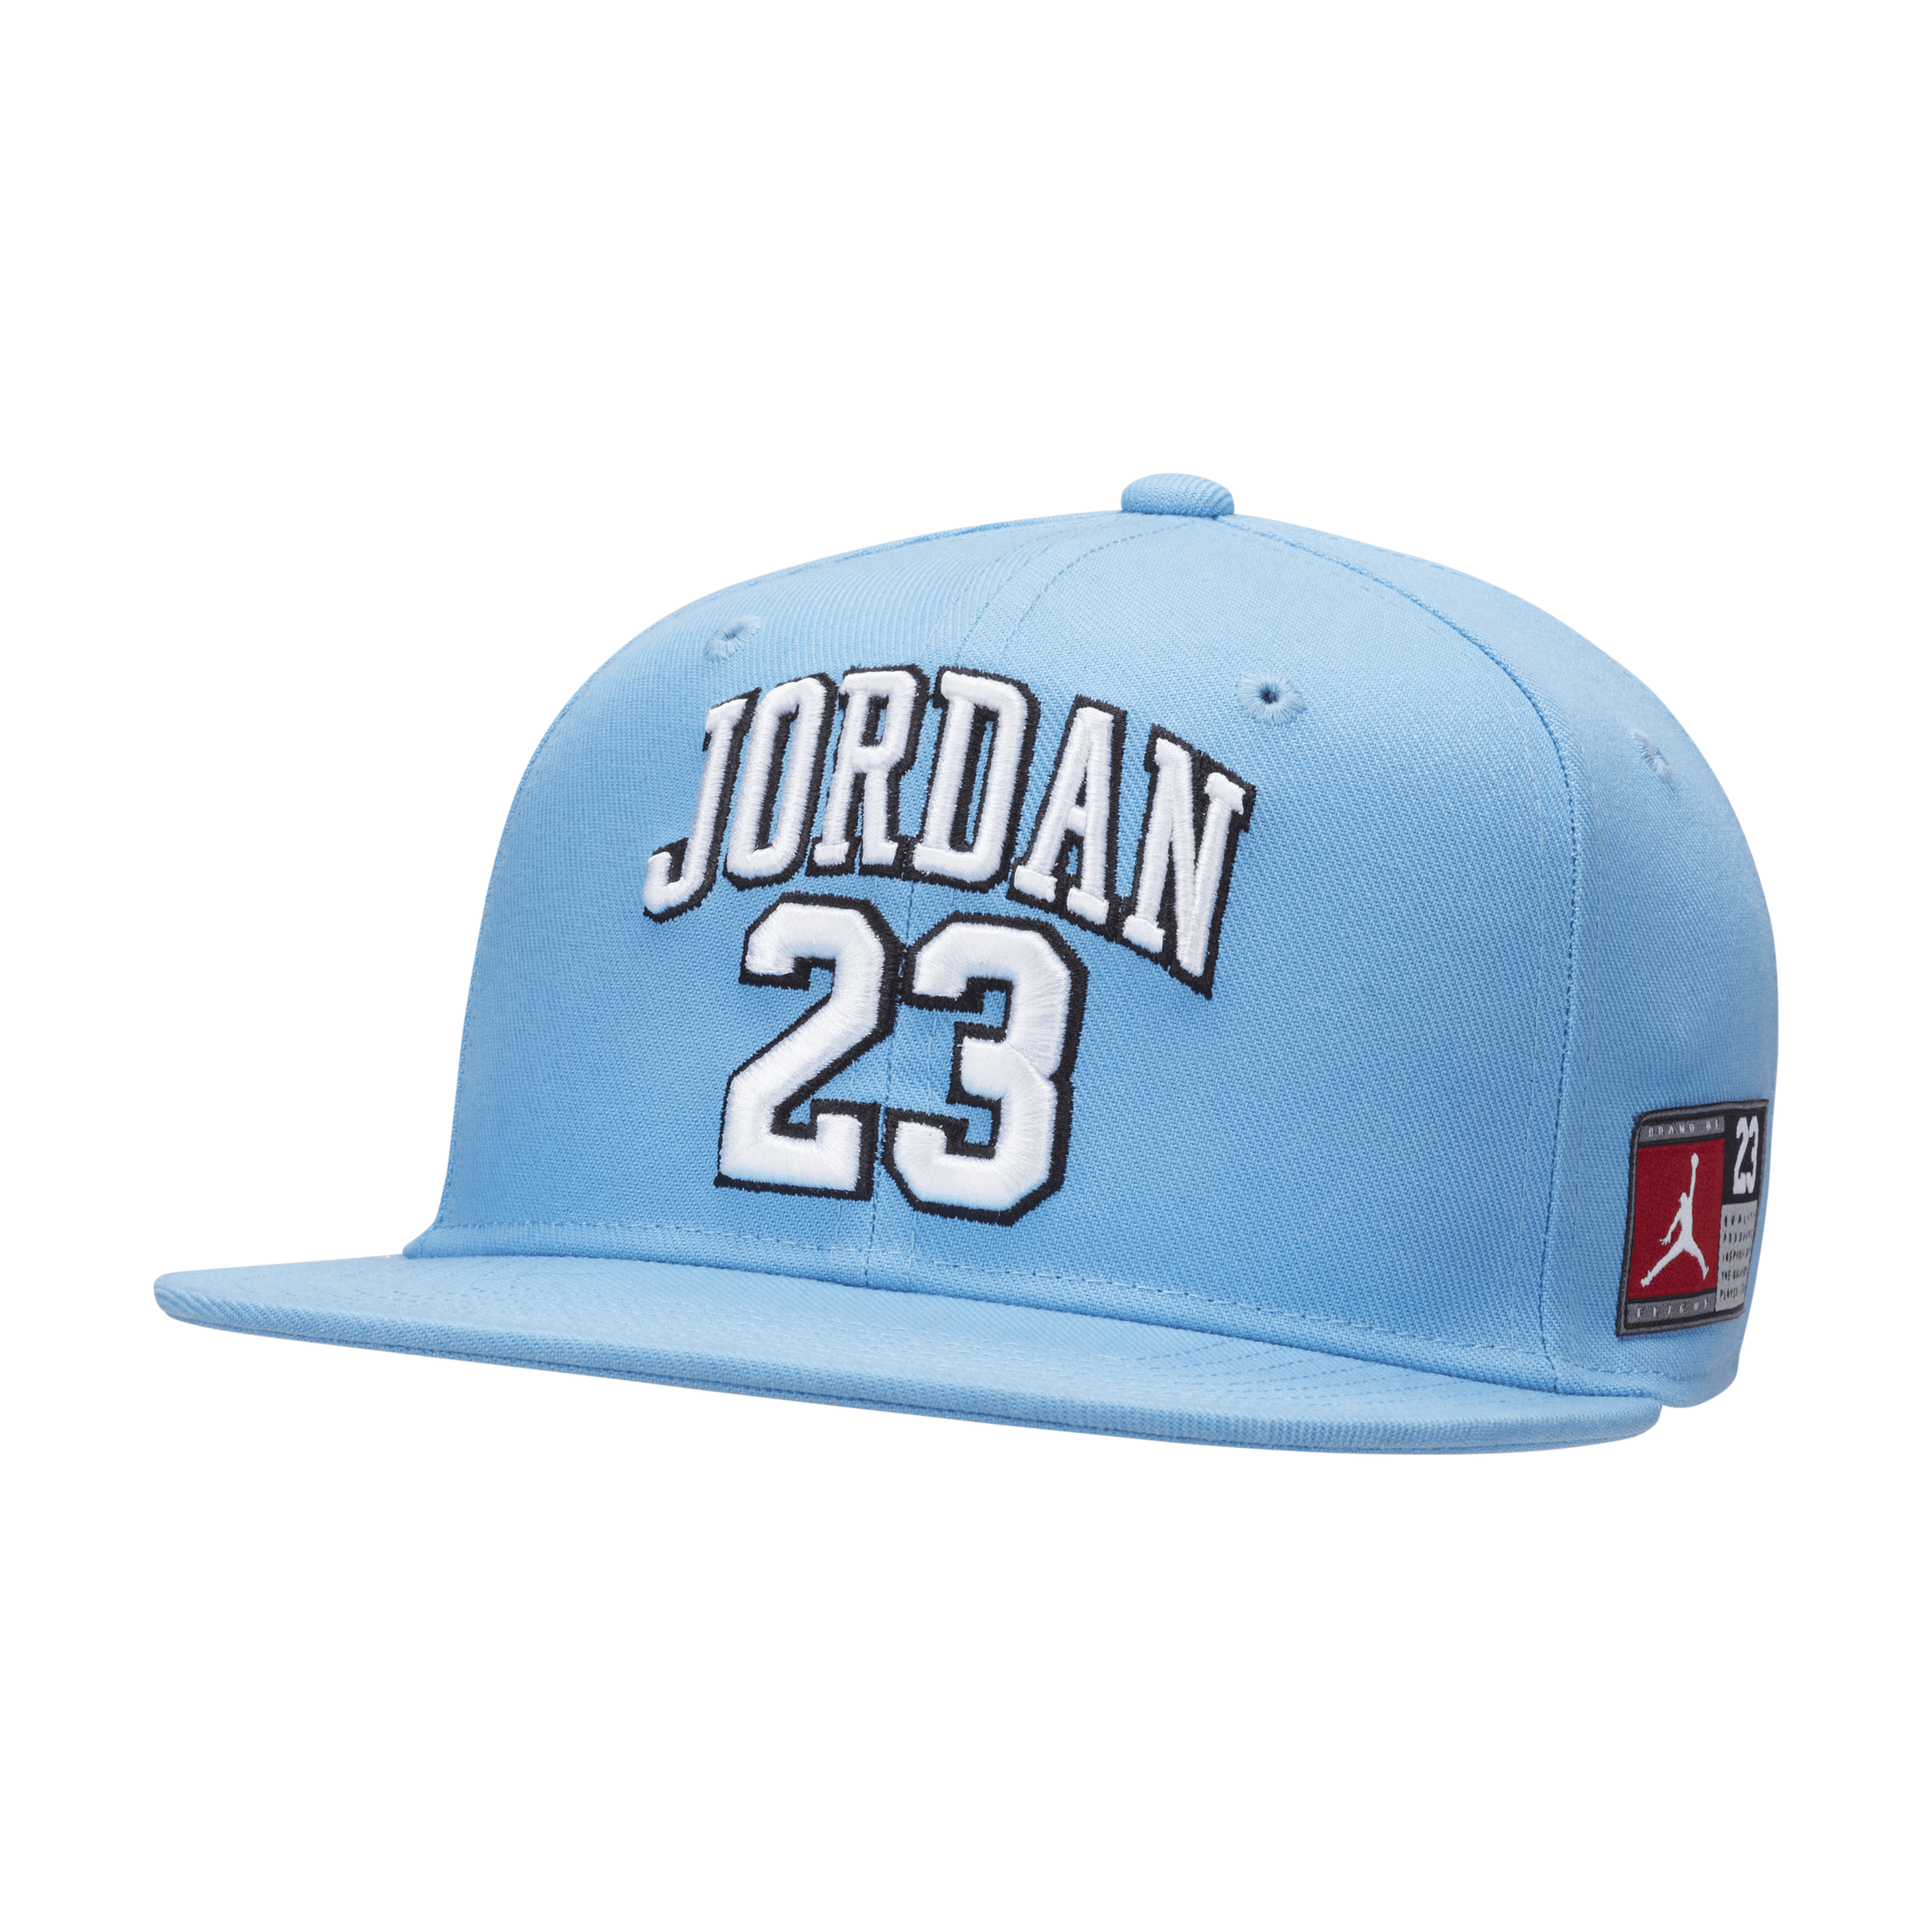 Jordan Jersey Flat Brim Cap Big Kids' Hat In Blue